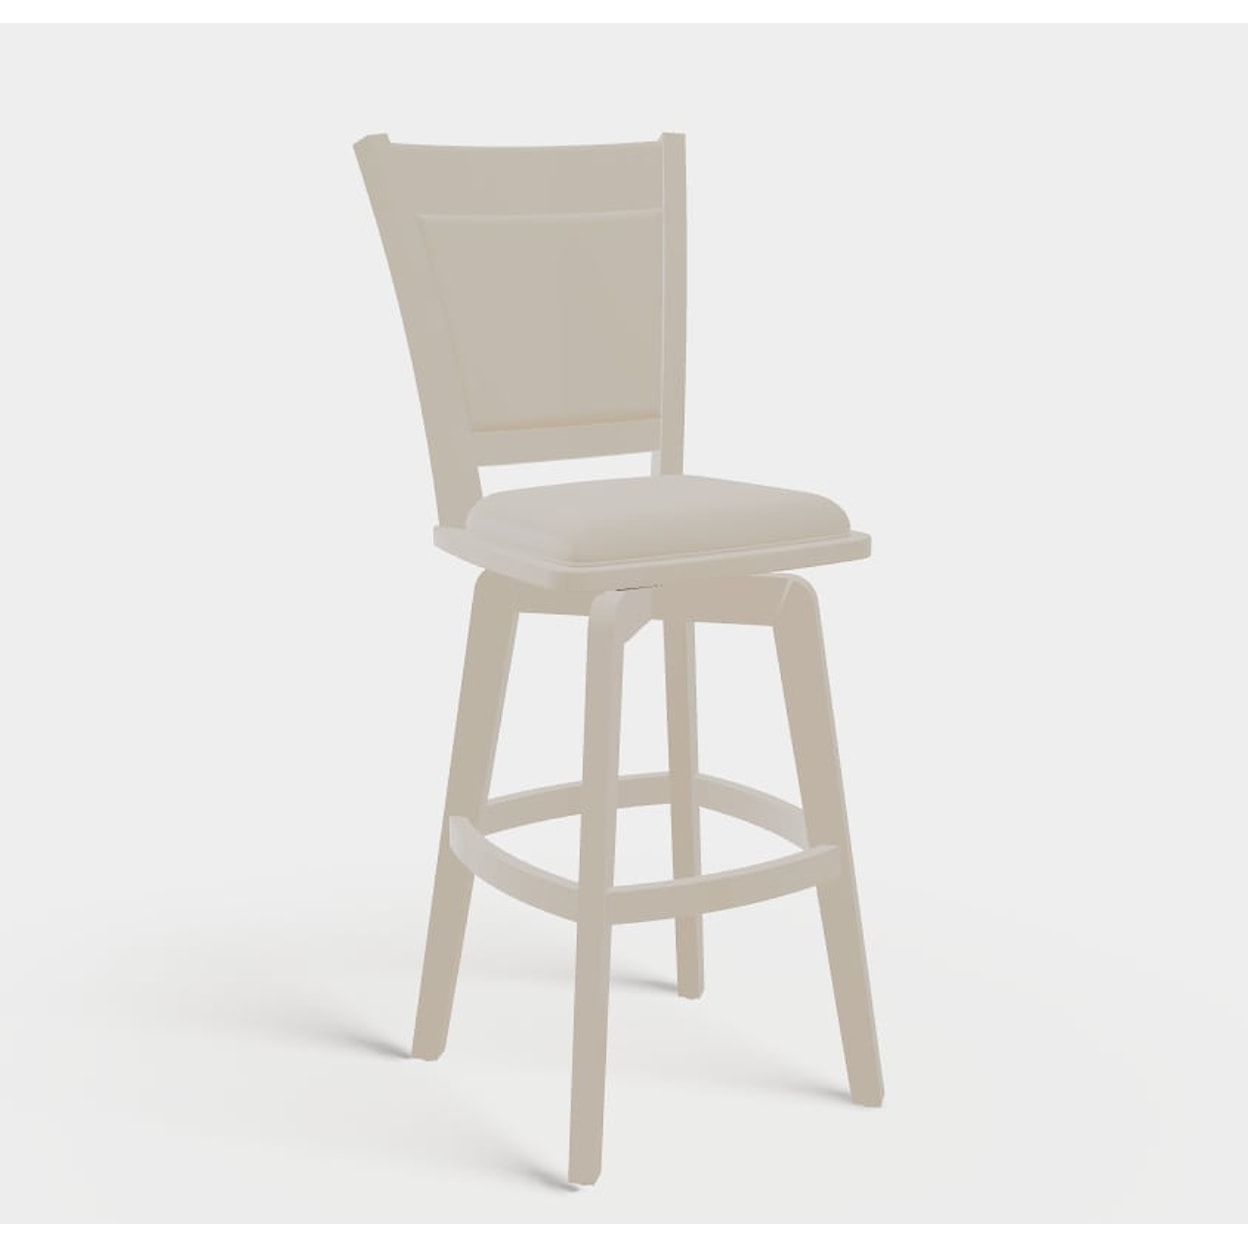 Mavin Sinclair Customizable Sinclair Chair/Barstool Line